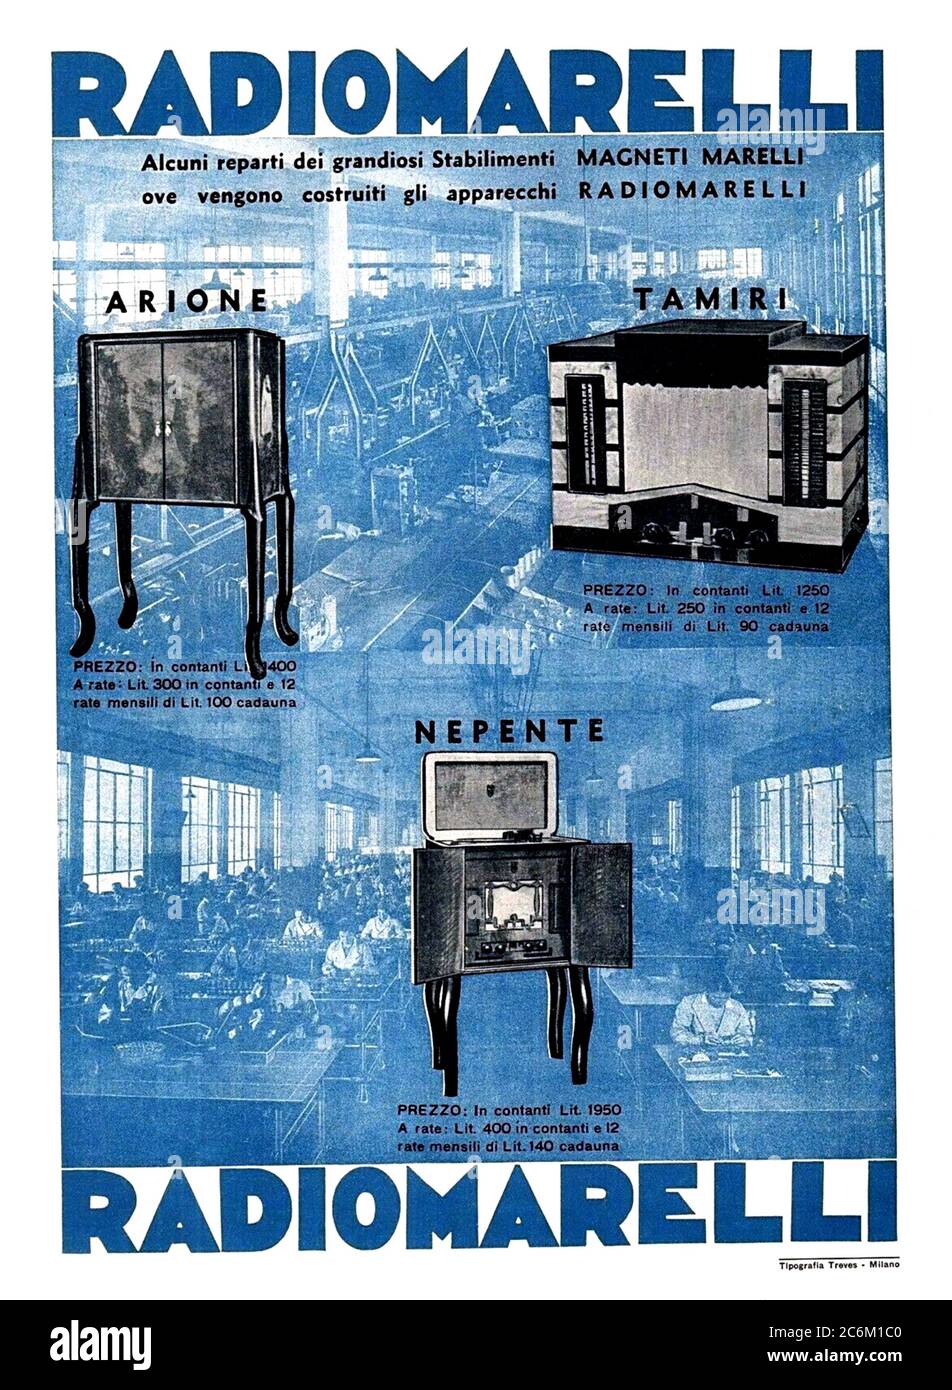 1935 , ITALIA : Publicidad para RADIOMARELLI por MARELLI factory , Milán . La fábrica se inauguró en 1929 desde el sector automovilístico GIOVANNI AGNELLI y Bruno Quintavalle (Presidente DE ERCOLE MARELLI), cerrada en 1975 . - RADIO APPARECCHIO - RADIO TRASMISSIONI RADIOFONICHE - FOTO STORICHE - MAGNETIMARELLI - MAGNETI MARELLI - HISTORIA - EIAR ( ENTE ITALIANO AUDIZIONI RADIOFONICHE ) - RADIOFONIA - TRASMISSIONI RADIOFONICHE - GRAFICA - GRÁFICO - ART DECÓ - NOVECENTO - 900's - '900 - SIGLO XX - ANNI TRENTA - 30's - '30 - locandina inserzione pubblicitaria - CARTEL - pubblicità - publicidad - manifiesto pubblic Foto de stock